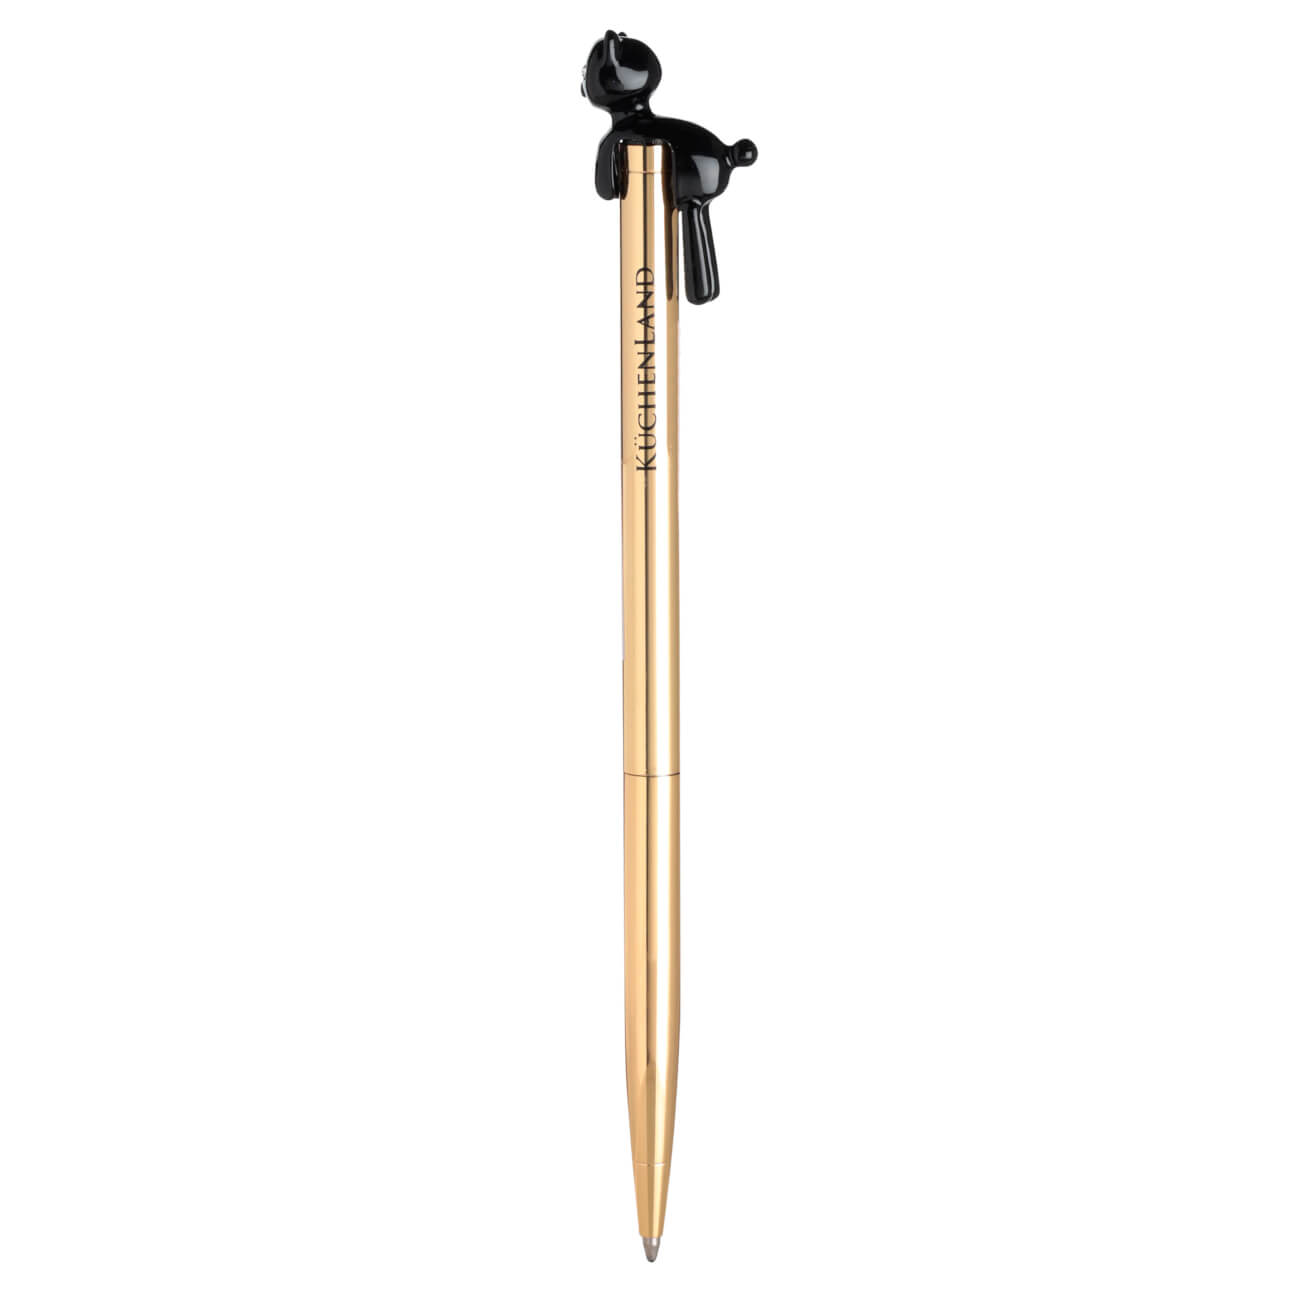 Ручка шариковая, 14 см, с фигуркой, металл, золотистая, Черный кот, Draw figure ручка металл шариковая